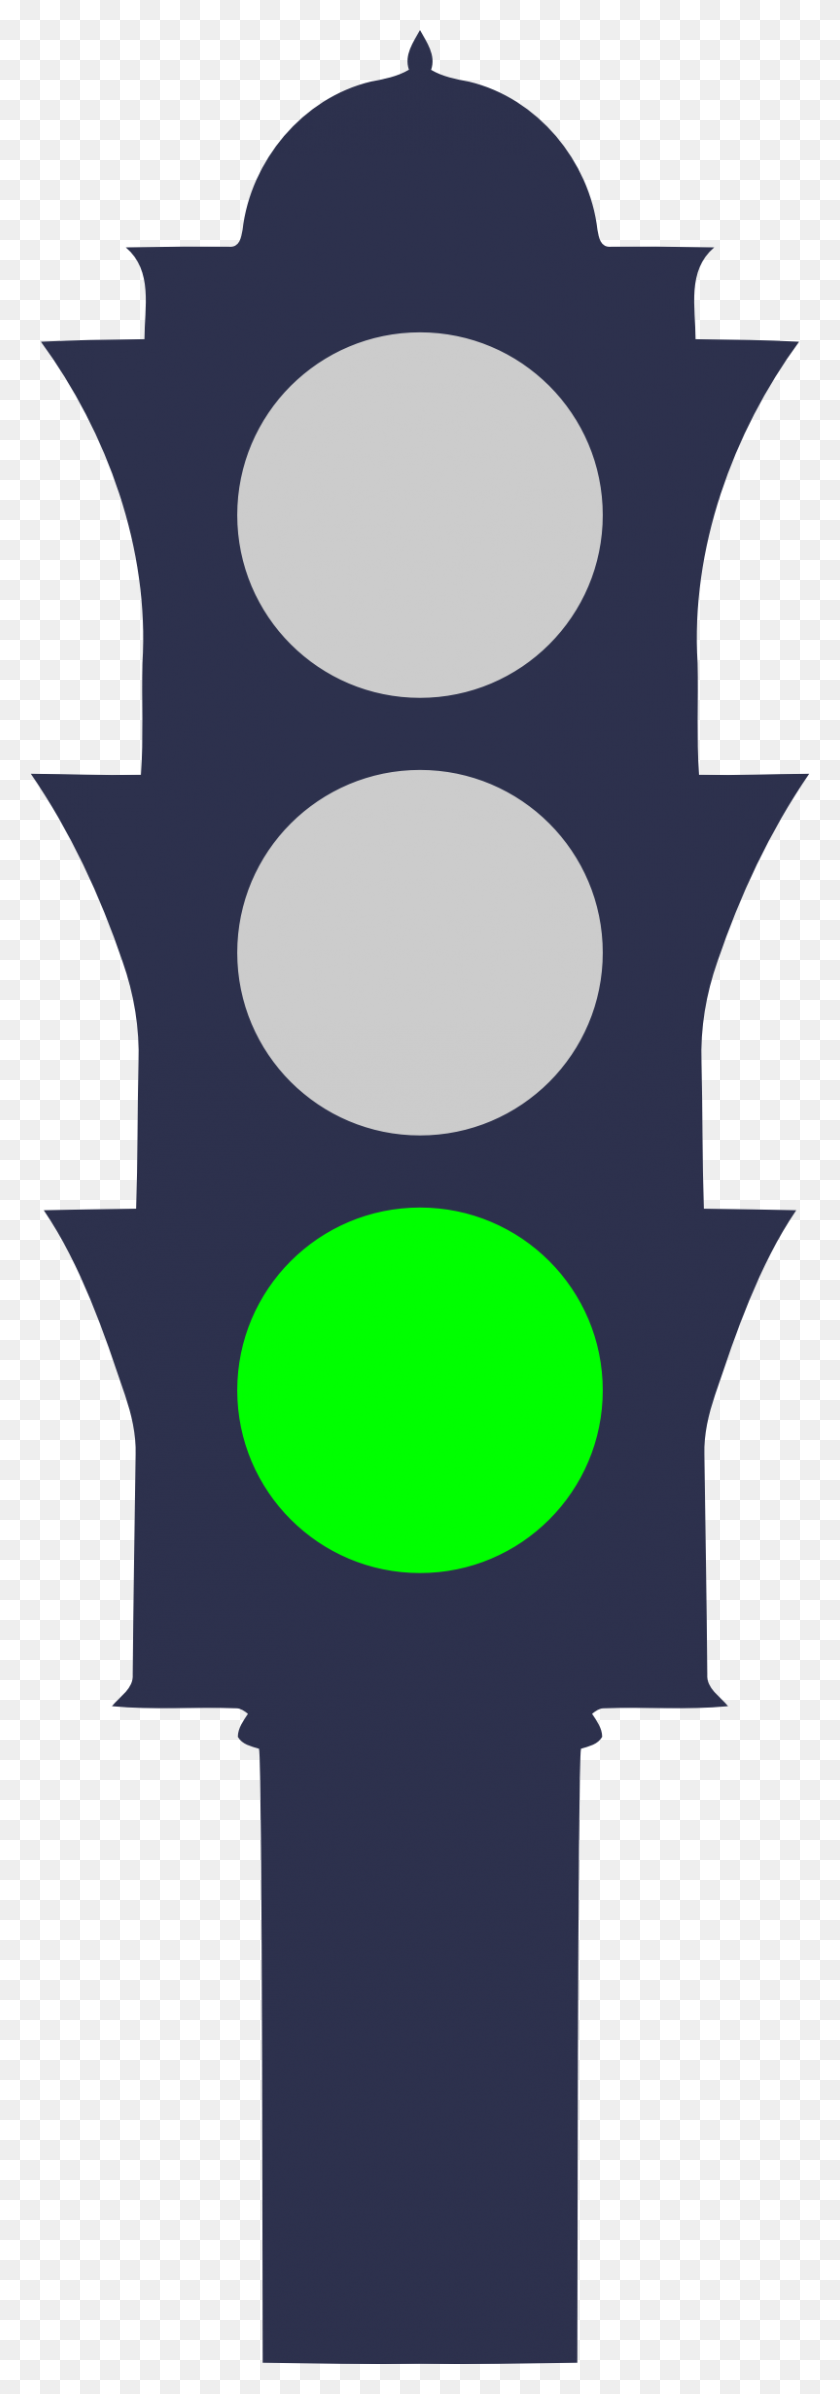 802x2400 Clipart - Green Light PNG